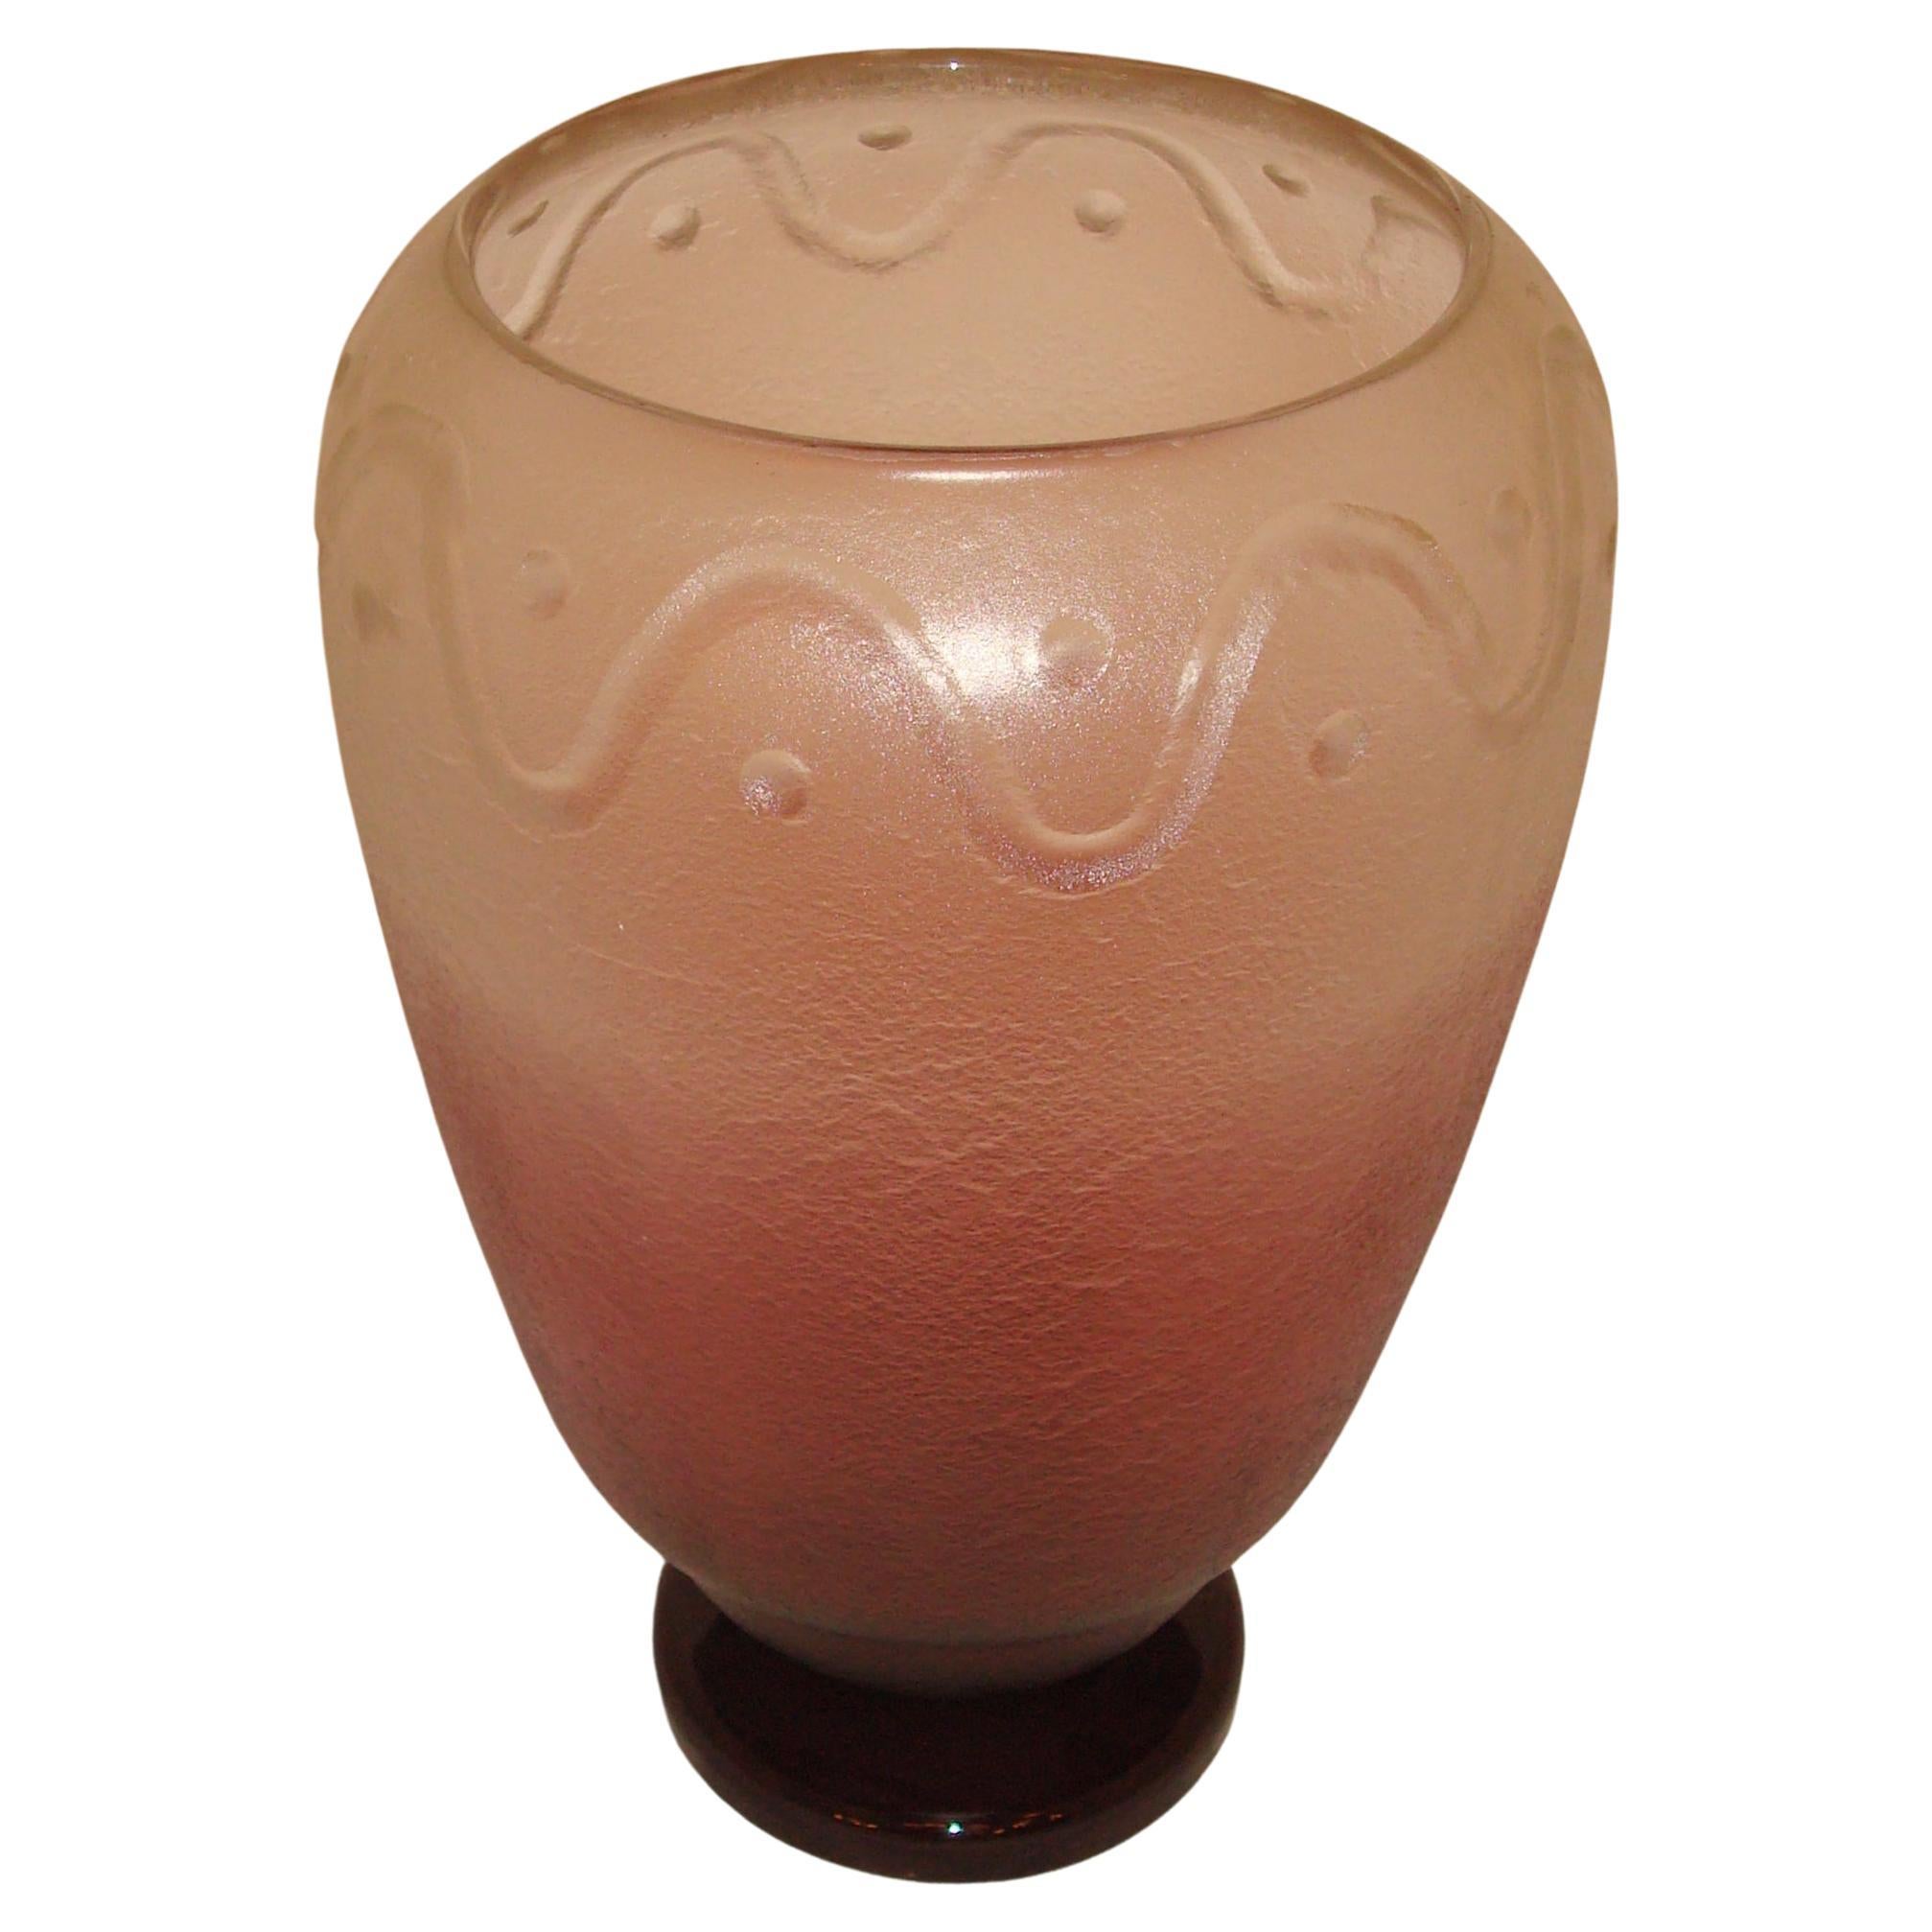 Signature du vase : Schneider France, 1928, Style : Art Déco, Design : Radio